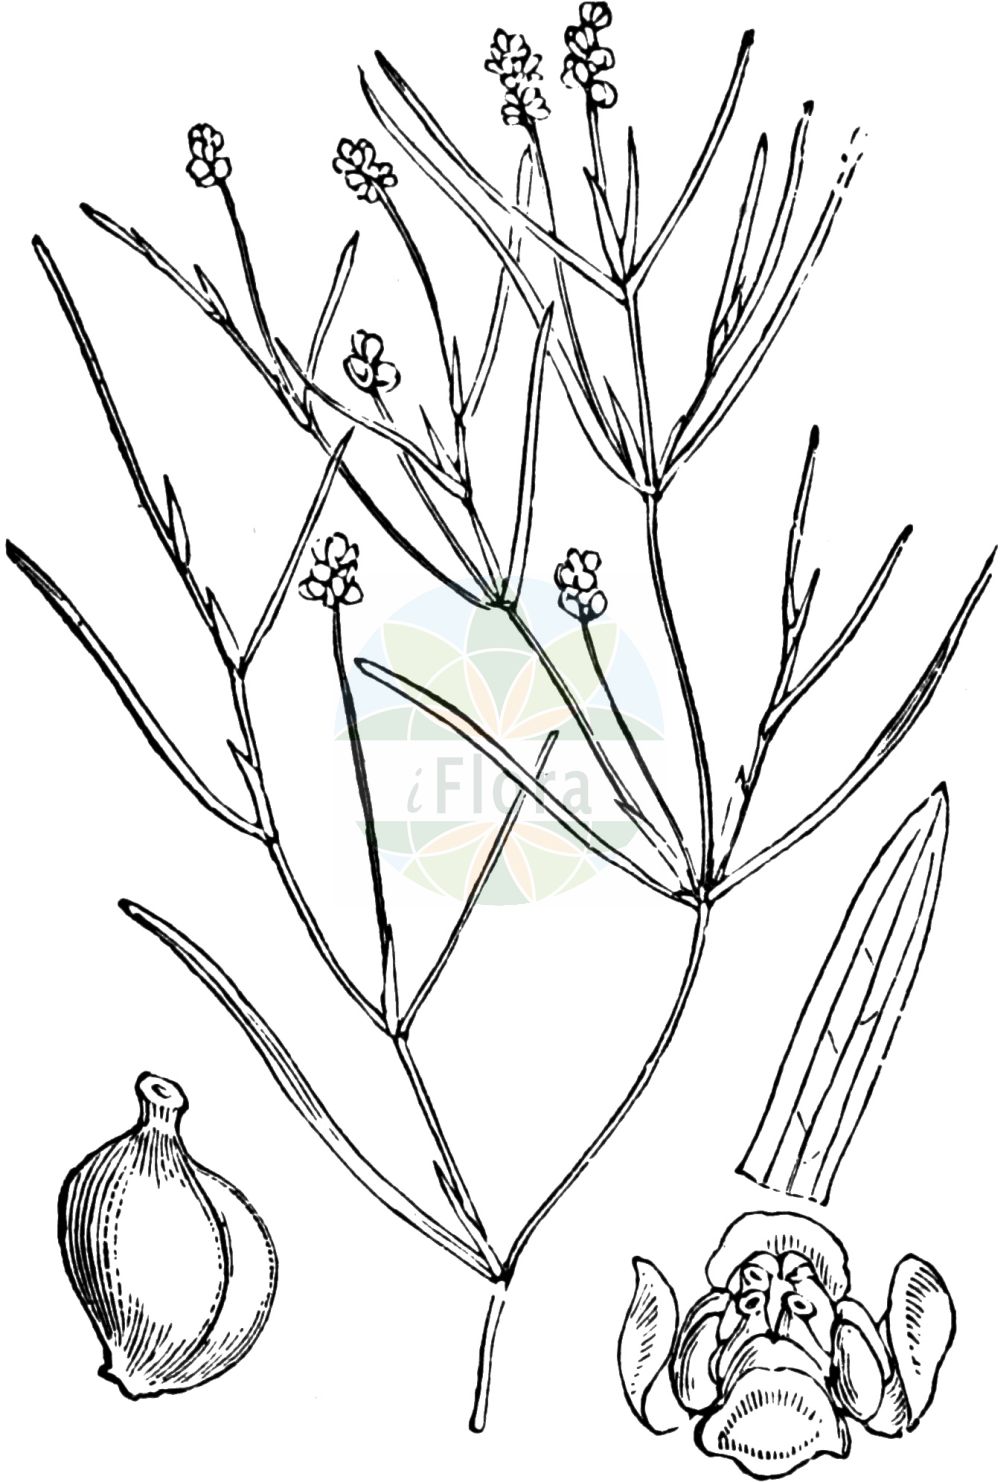 Historische Abbildung von Potamogeton pusillus (Zwerg-Laichkraut - Lesser Pondweed). Das Bild zeigt Blatt, Bluete, Frucht und Same. ---- Historical Drawing of Potamogeton pusillus (Zwerg-Laichkraut - Lesser Pondweed). The image is showing leaf, flower, fruit and seed.(Potamogeton pusillus,Zwerg-Laichkraut,Lesser Pondweed,Potamogeton gracilis,Potamogeton panormitanus,Potamogeton pusillus,Potamogeton skvortsovii,Zwerg-Laichkraut,Kleines Laichkraut,Lesser Pondweed,Slender Pondweed,Small Pondweed,Potamogeton,Laichkraut,Pondweed,Potamogetonaceae,Laichkrautgewächse,Pondweed family,Blatt,Bluete,Frucht,Same,leaf,flower,fruit,seed,Fitch et al. (1880))